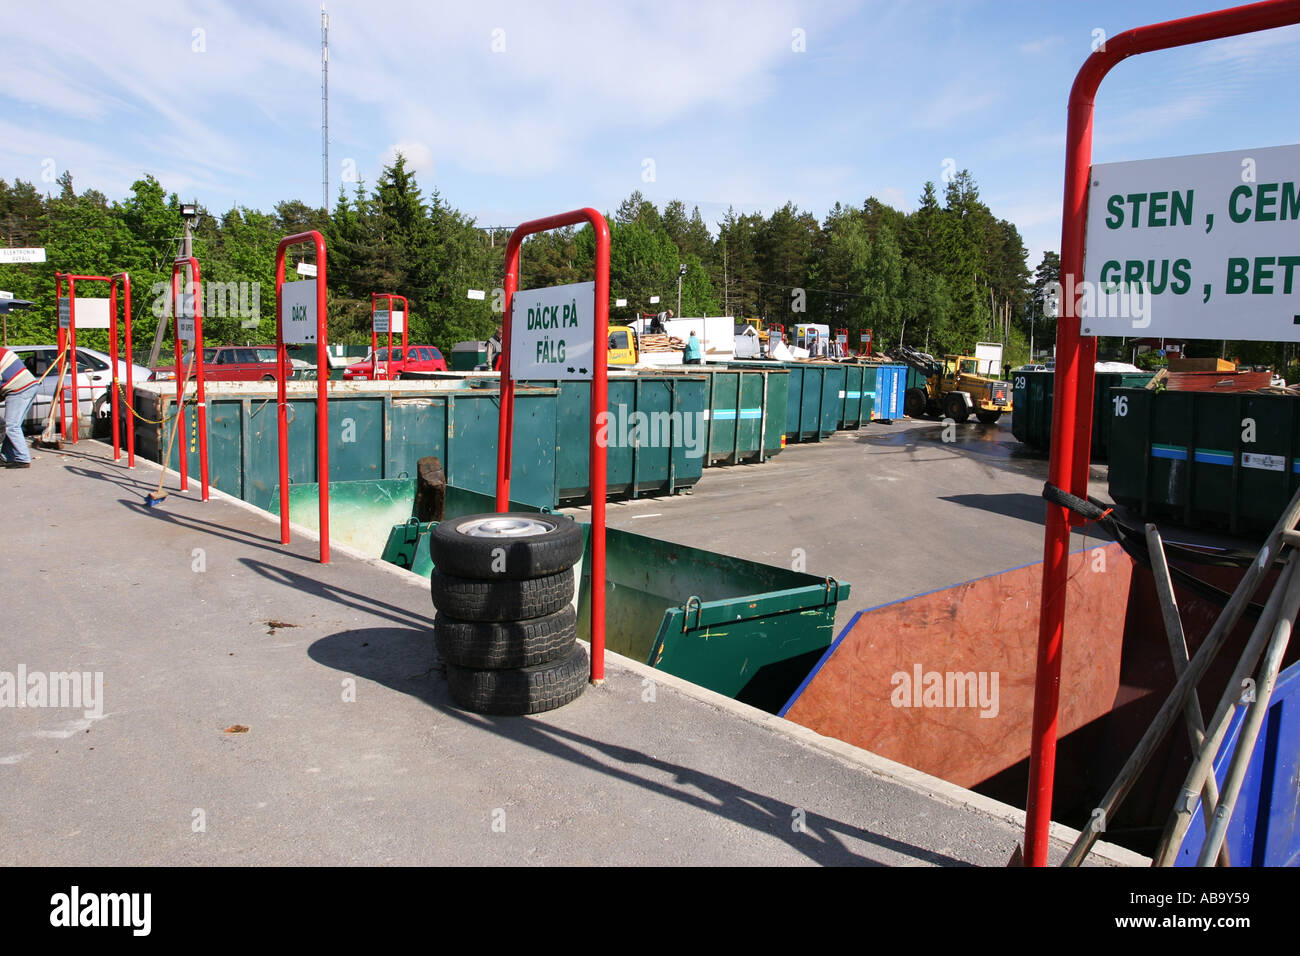 Une station de recyclage municipal public en Suède Banque D'Images